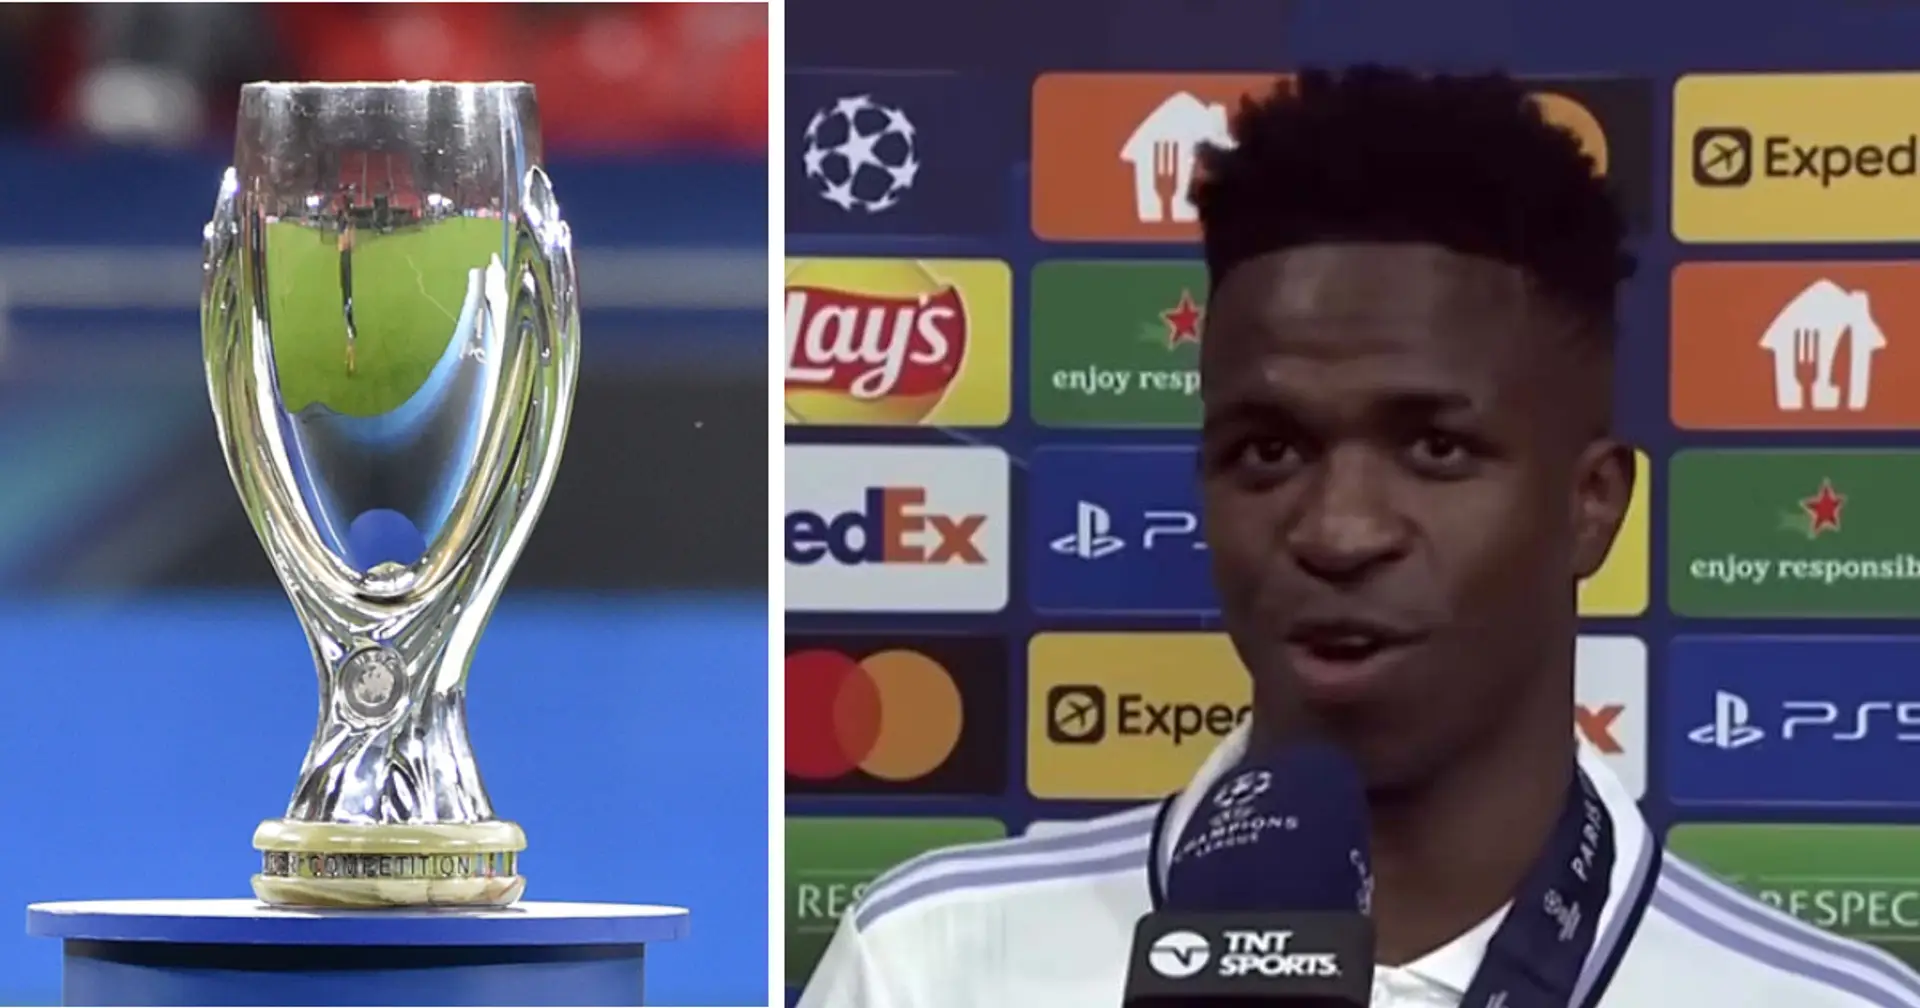 "C'est dans l'ADN du Real Madrid": Vinicius vise le trophée de la Super Coupe d'Europe